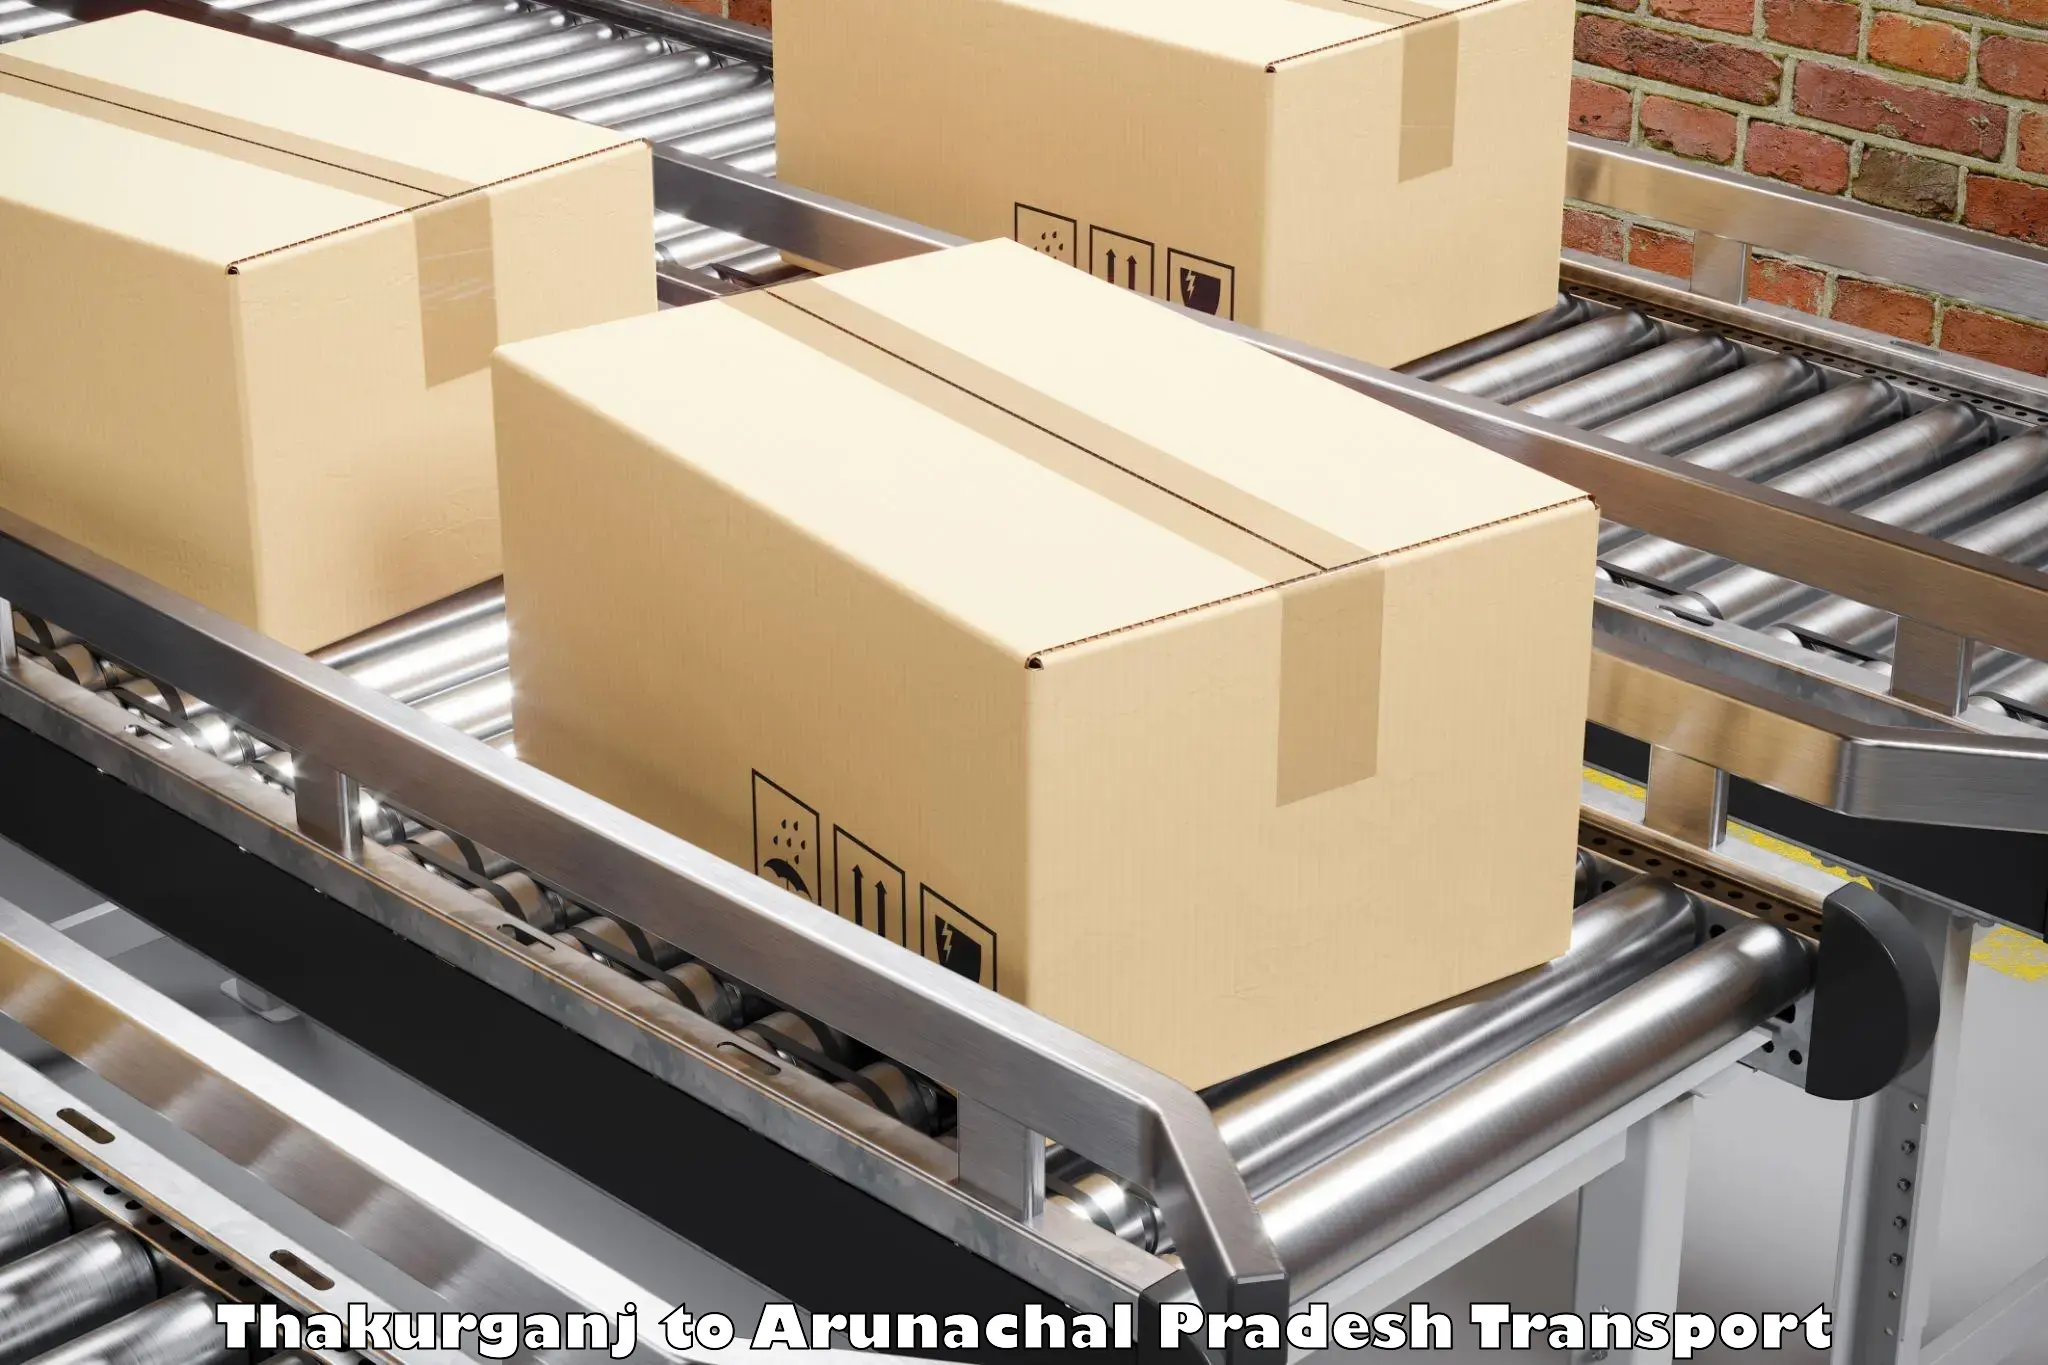 Daily parcel service transport Thakurganj to Arunachal Pradesh